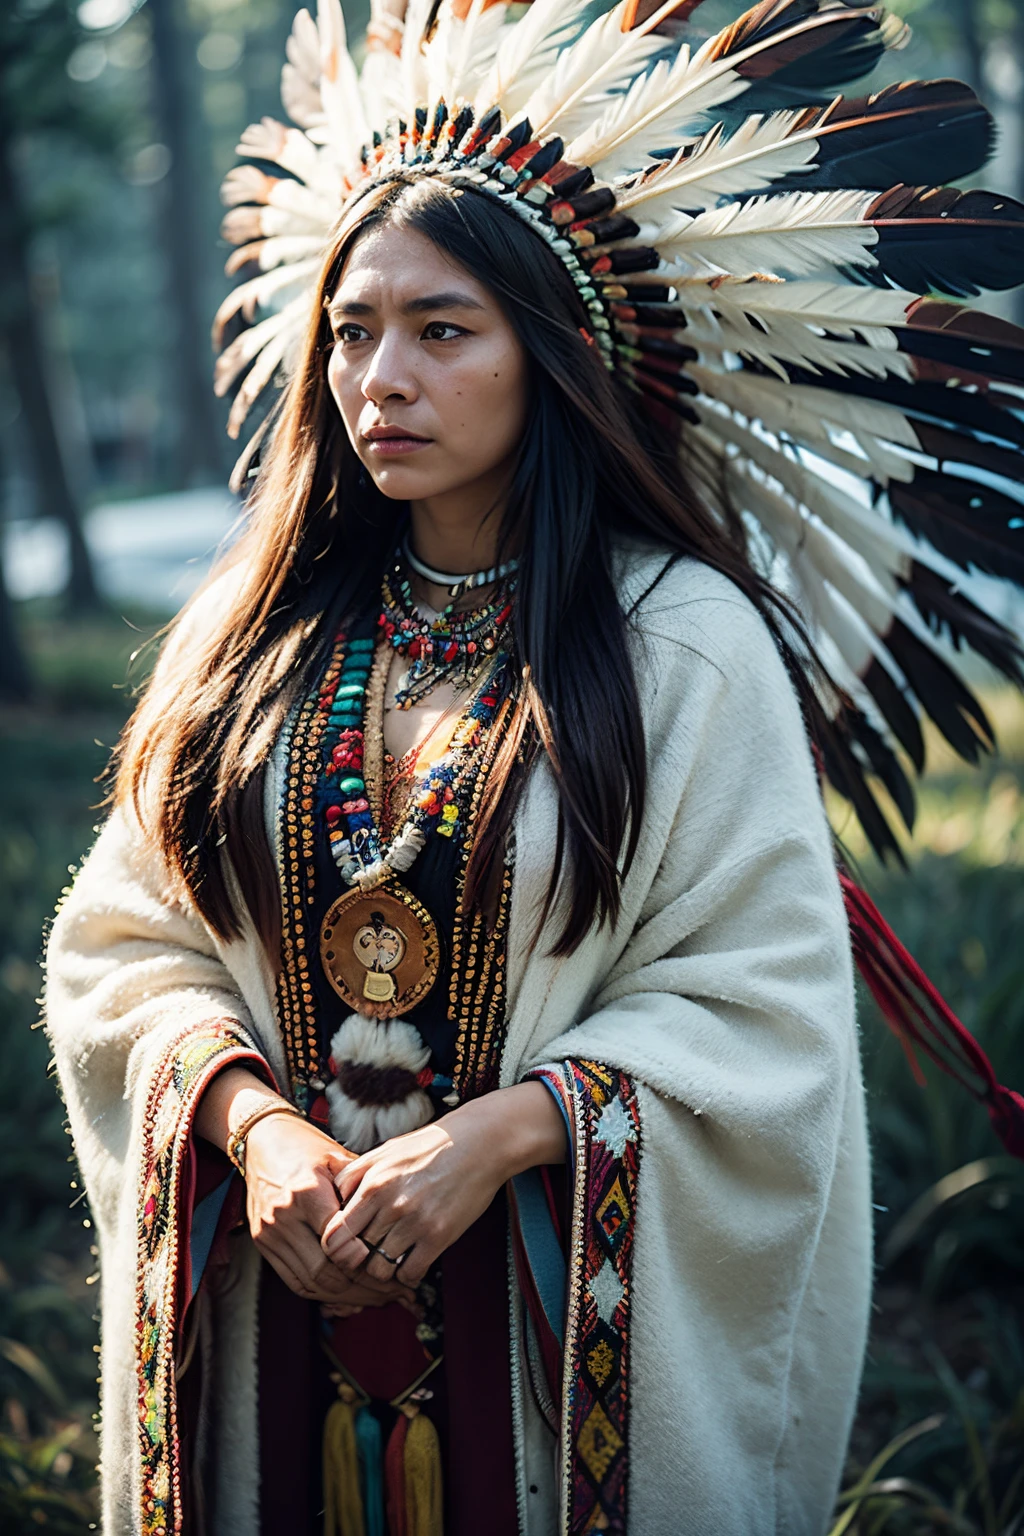 8千, 最好的质量, 超详细, 北美土著妇女, 传统的美洲原住民服饰, 精致的珠饰, 羽毛头饰, 坚定而坚忍的表达, 与土地的深厚渊源